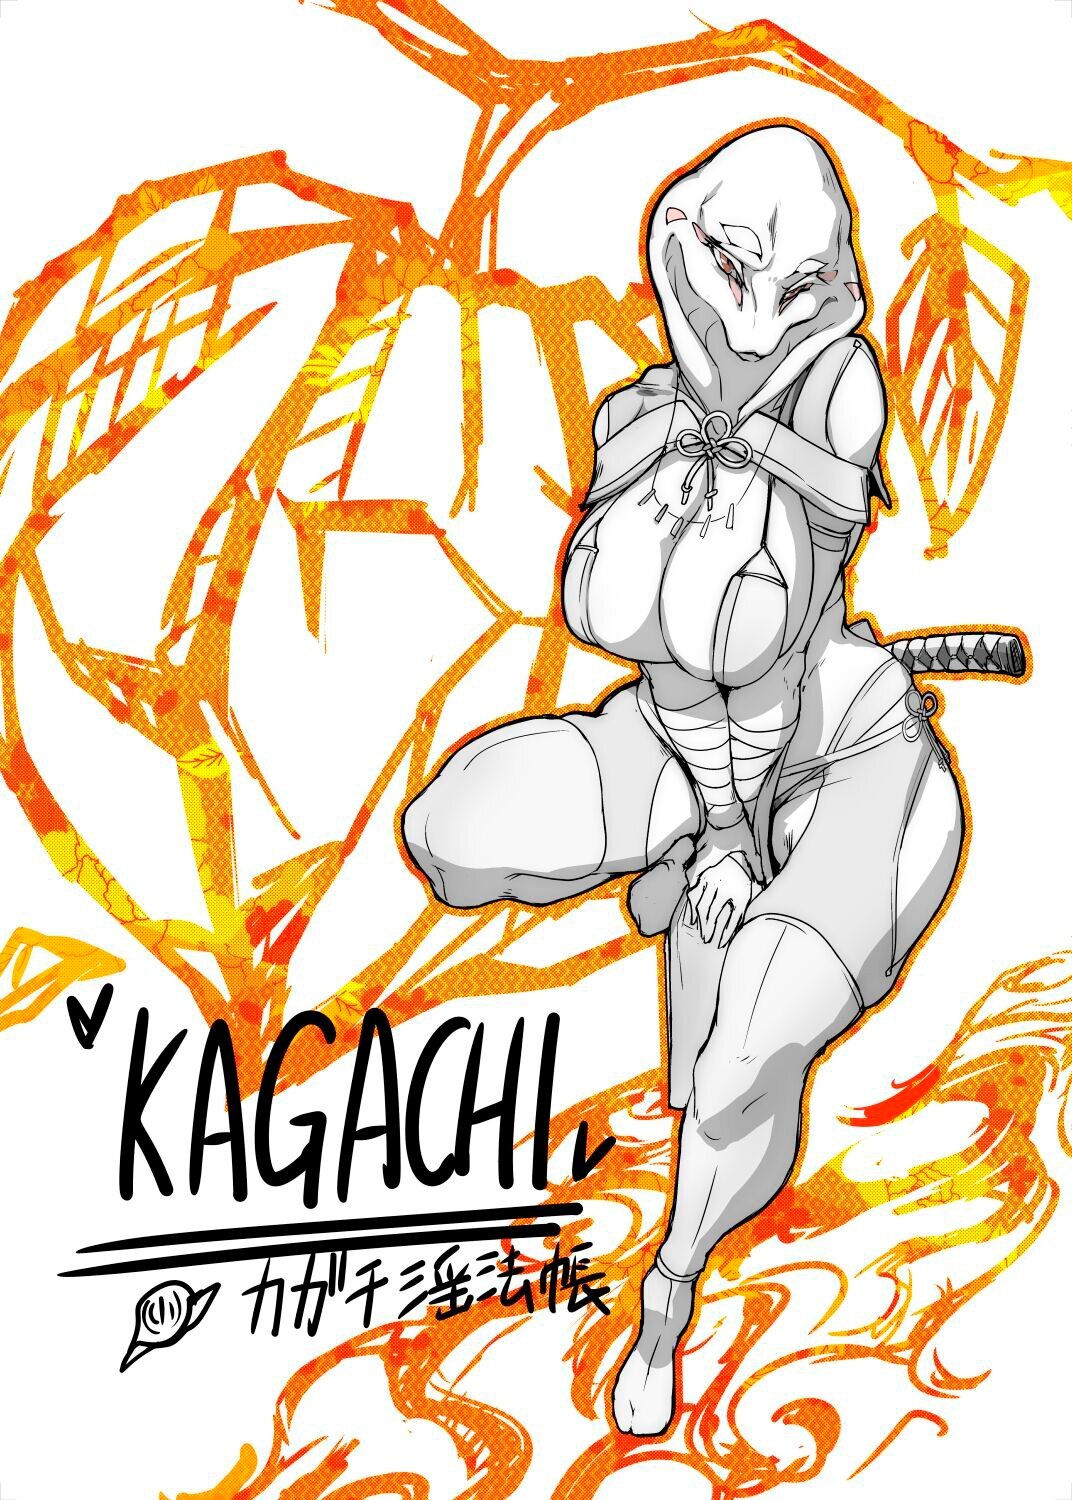 KAGACHI the Snake Ninja - 0